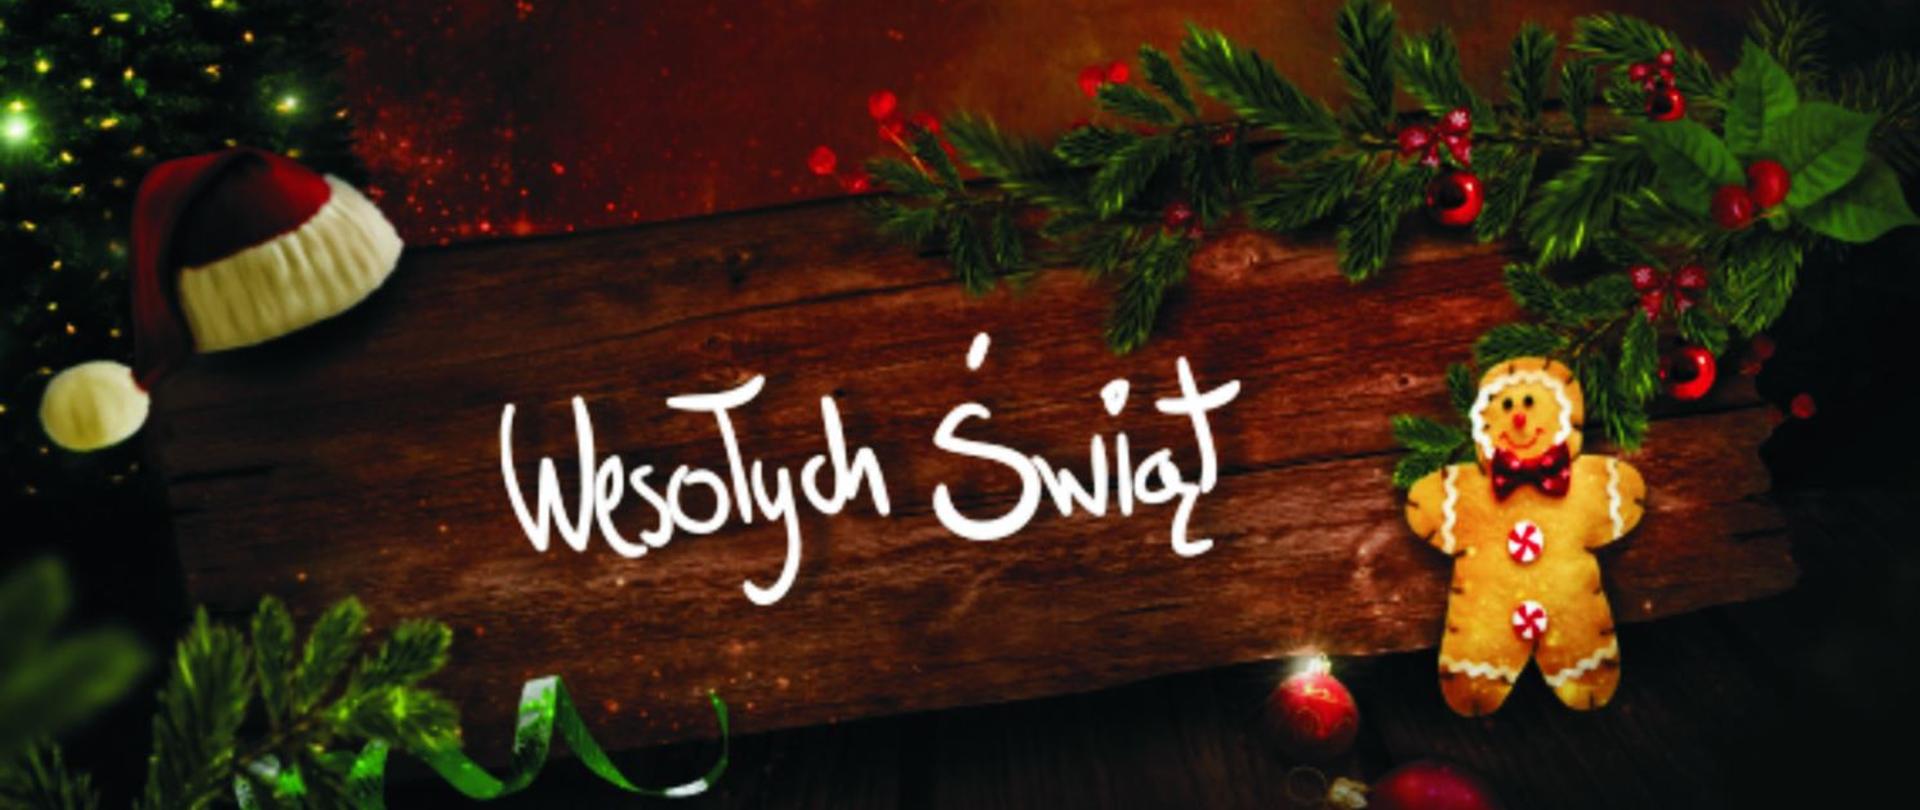 Kartka świąteczna "Wesołych i pogodnych Świąt Bożego Narodzenia oraz spełnienia marzeń z okazji nadchodzącego Nowego Roku 2021 życzy Dyrekcja oraz Pracownicy PSSE w Gliwicach"